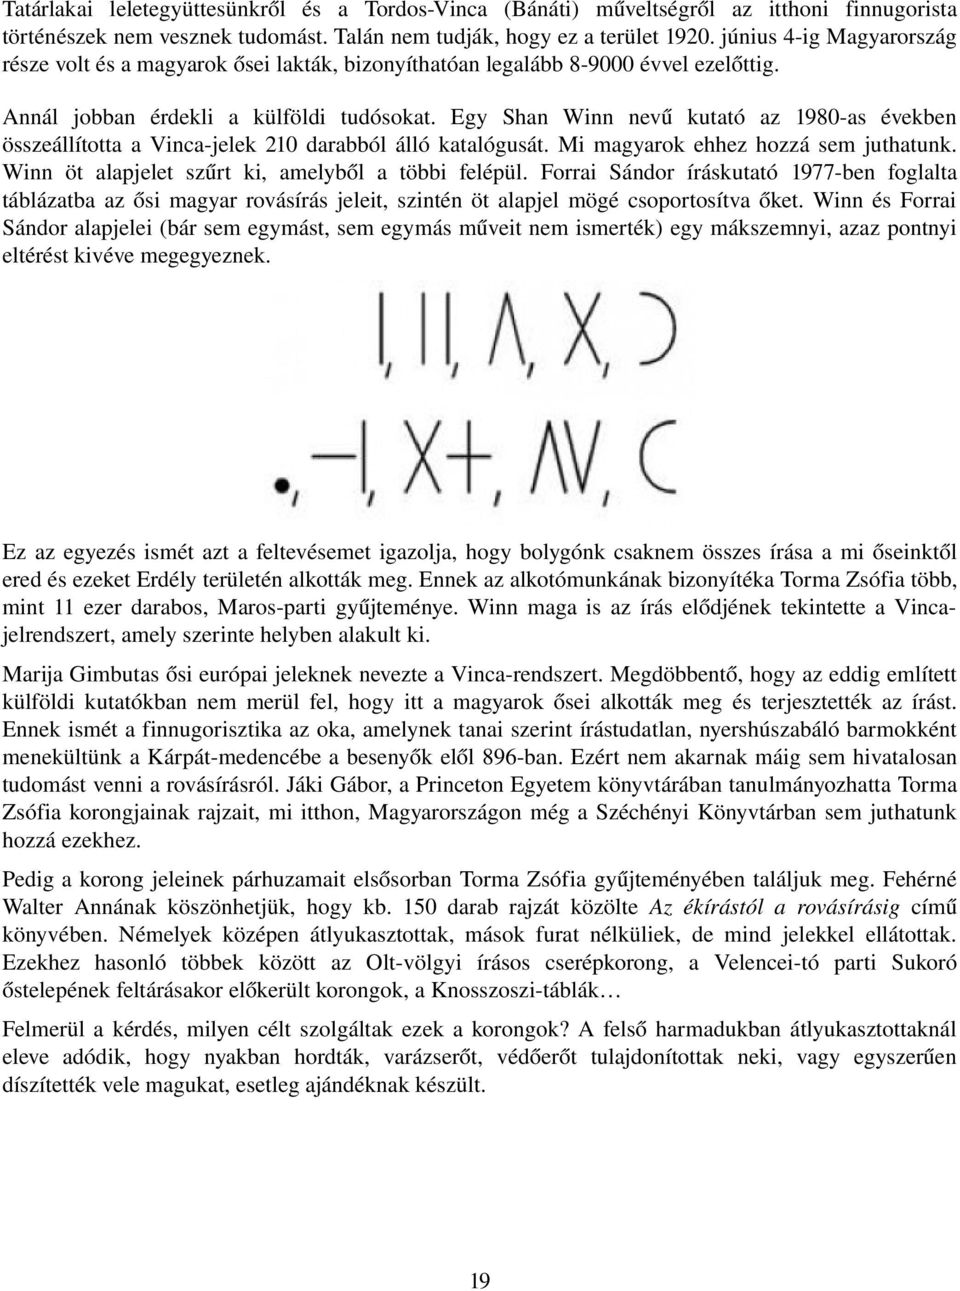 Egy Shan Winn nevű kutató az 1980 as években összeállította a Vinca jelek 210 darabból álló katalógusát. Mi magyarok ehhez hozzá sem juthatunk. Winn öt alapjelet szűrt ki, amelyből a többi felépül.